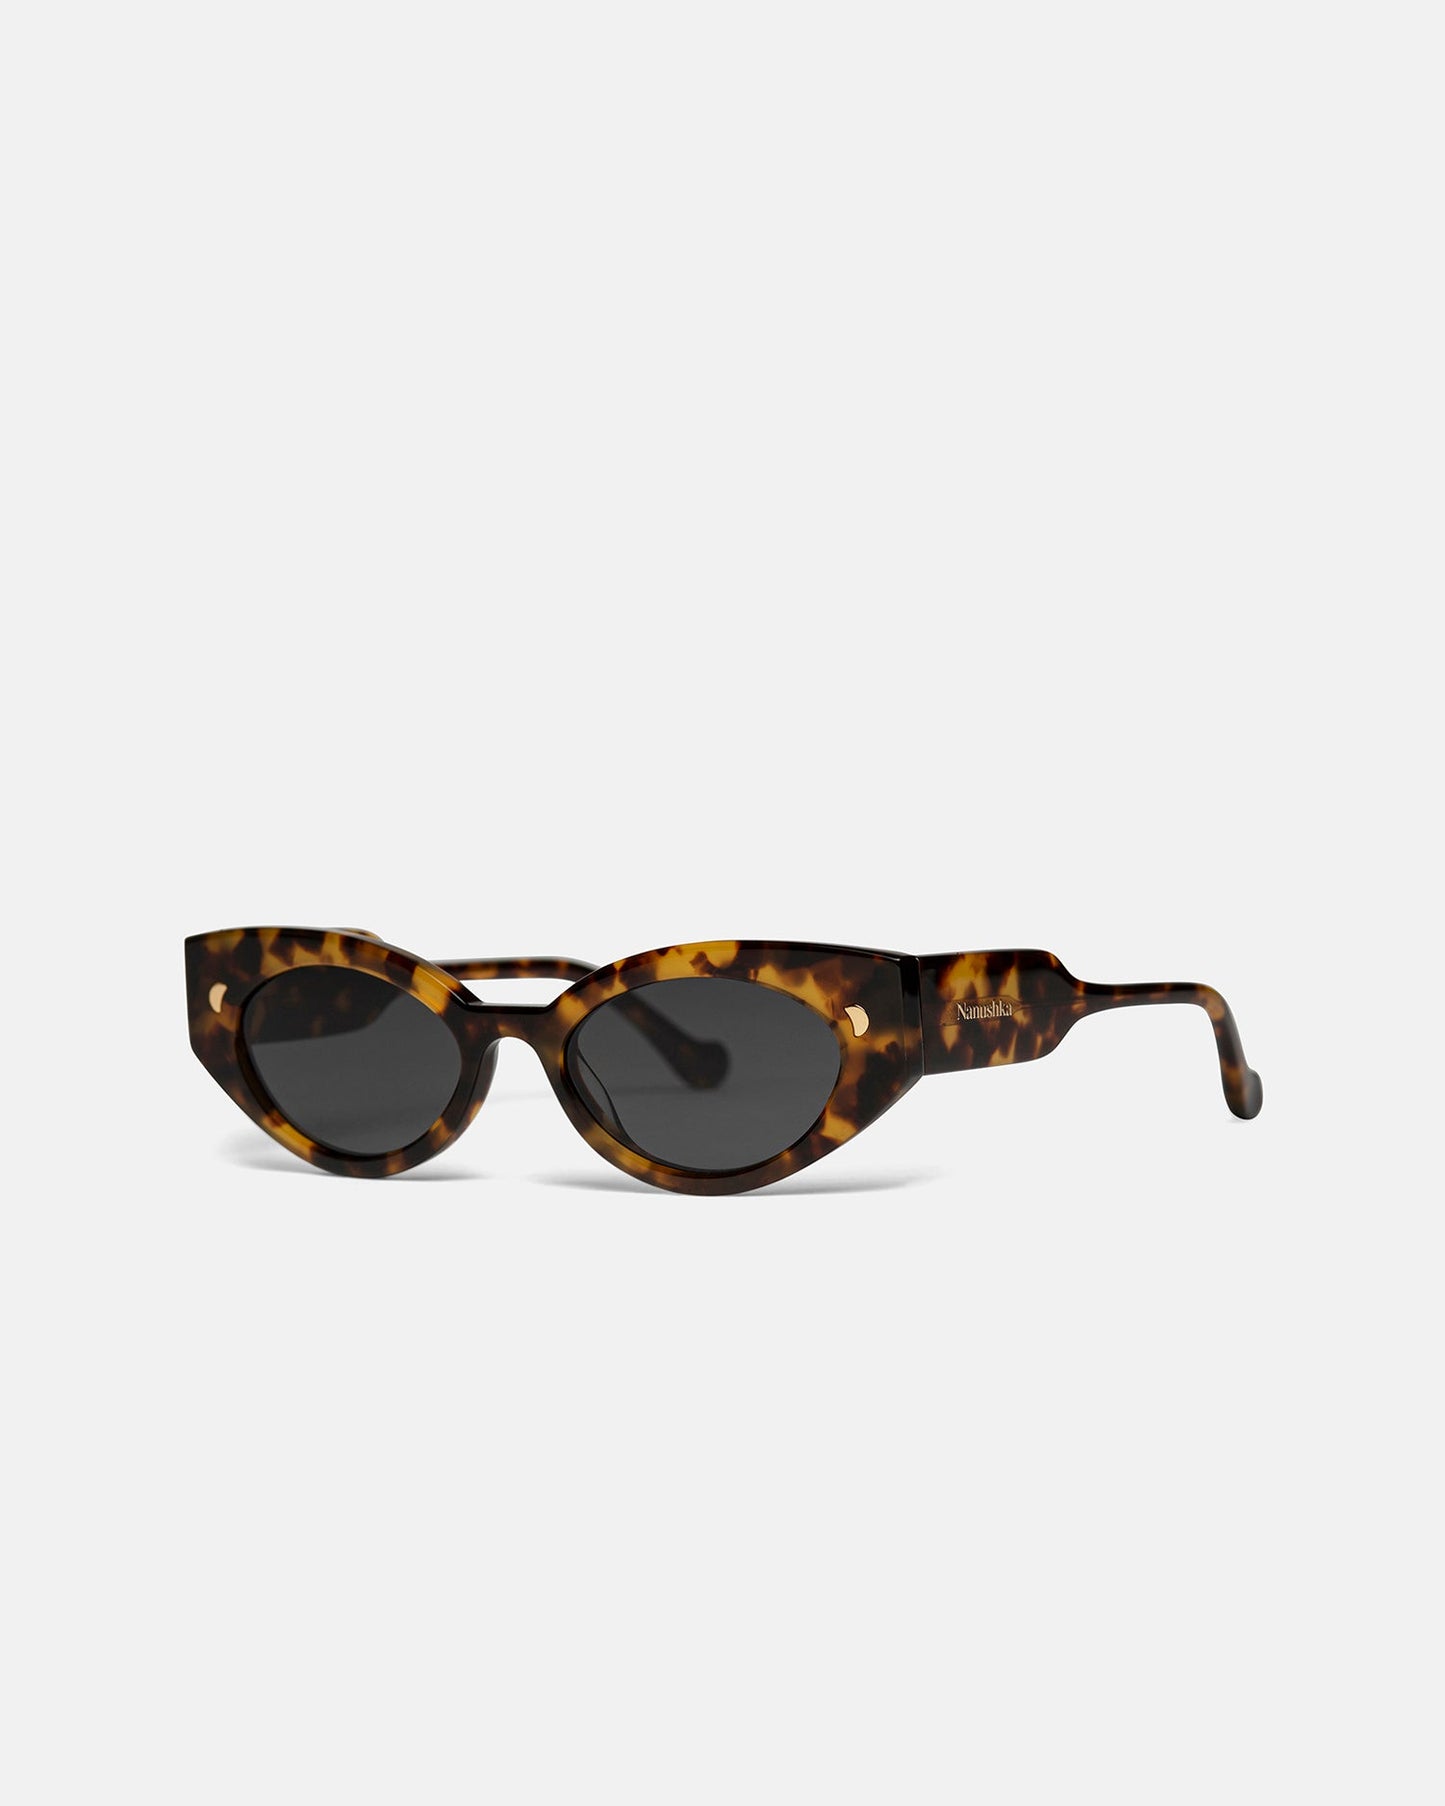 Azalea - Bio-Plastic Cat-Eye Sunglasses - Tortoishell